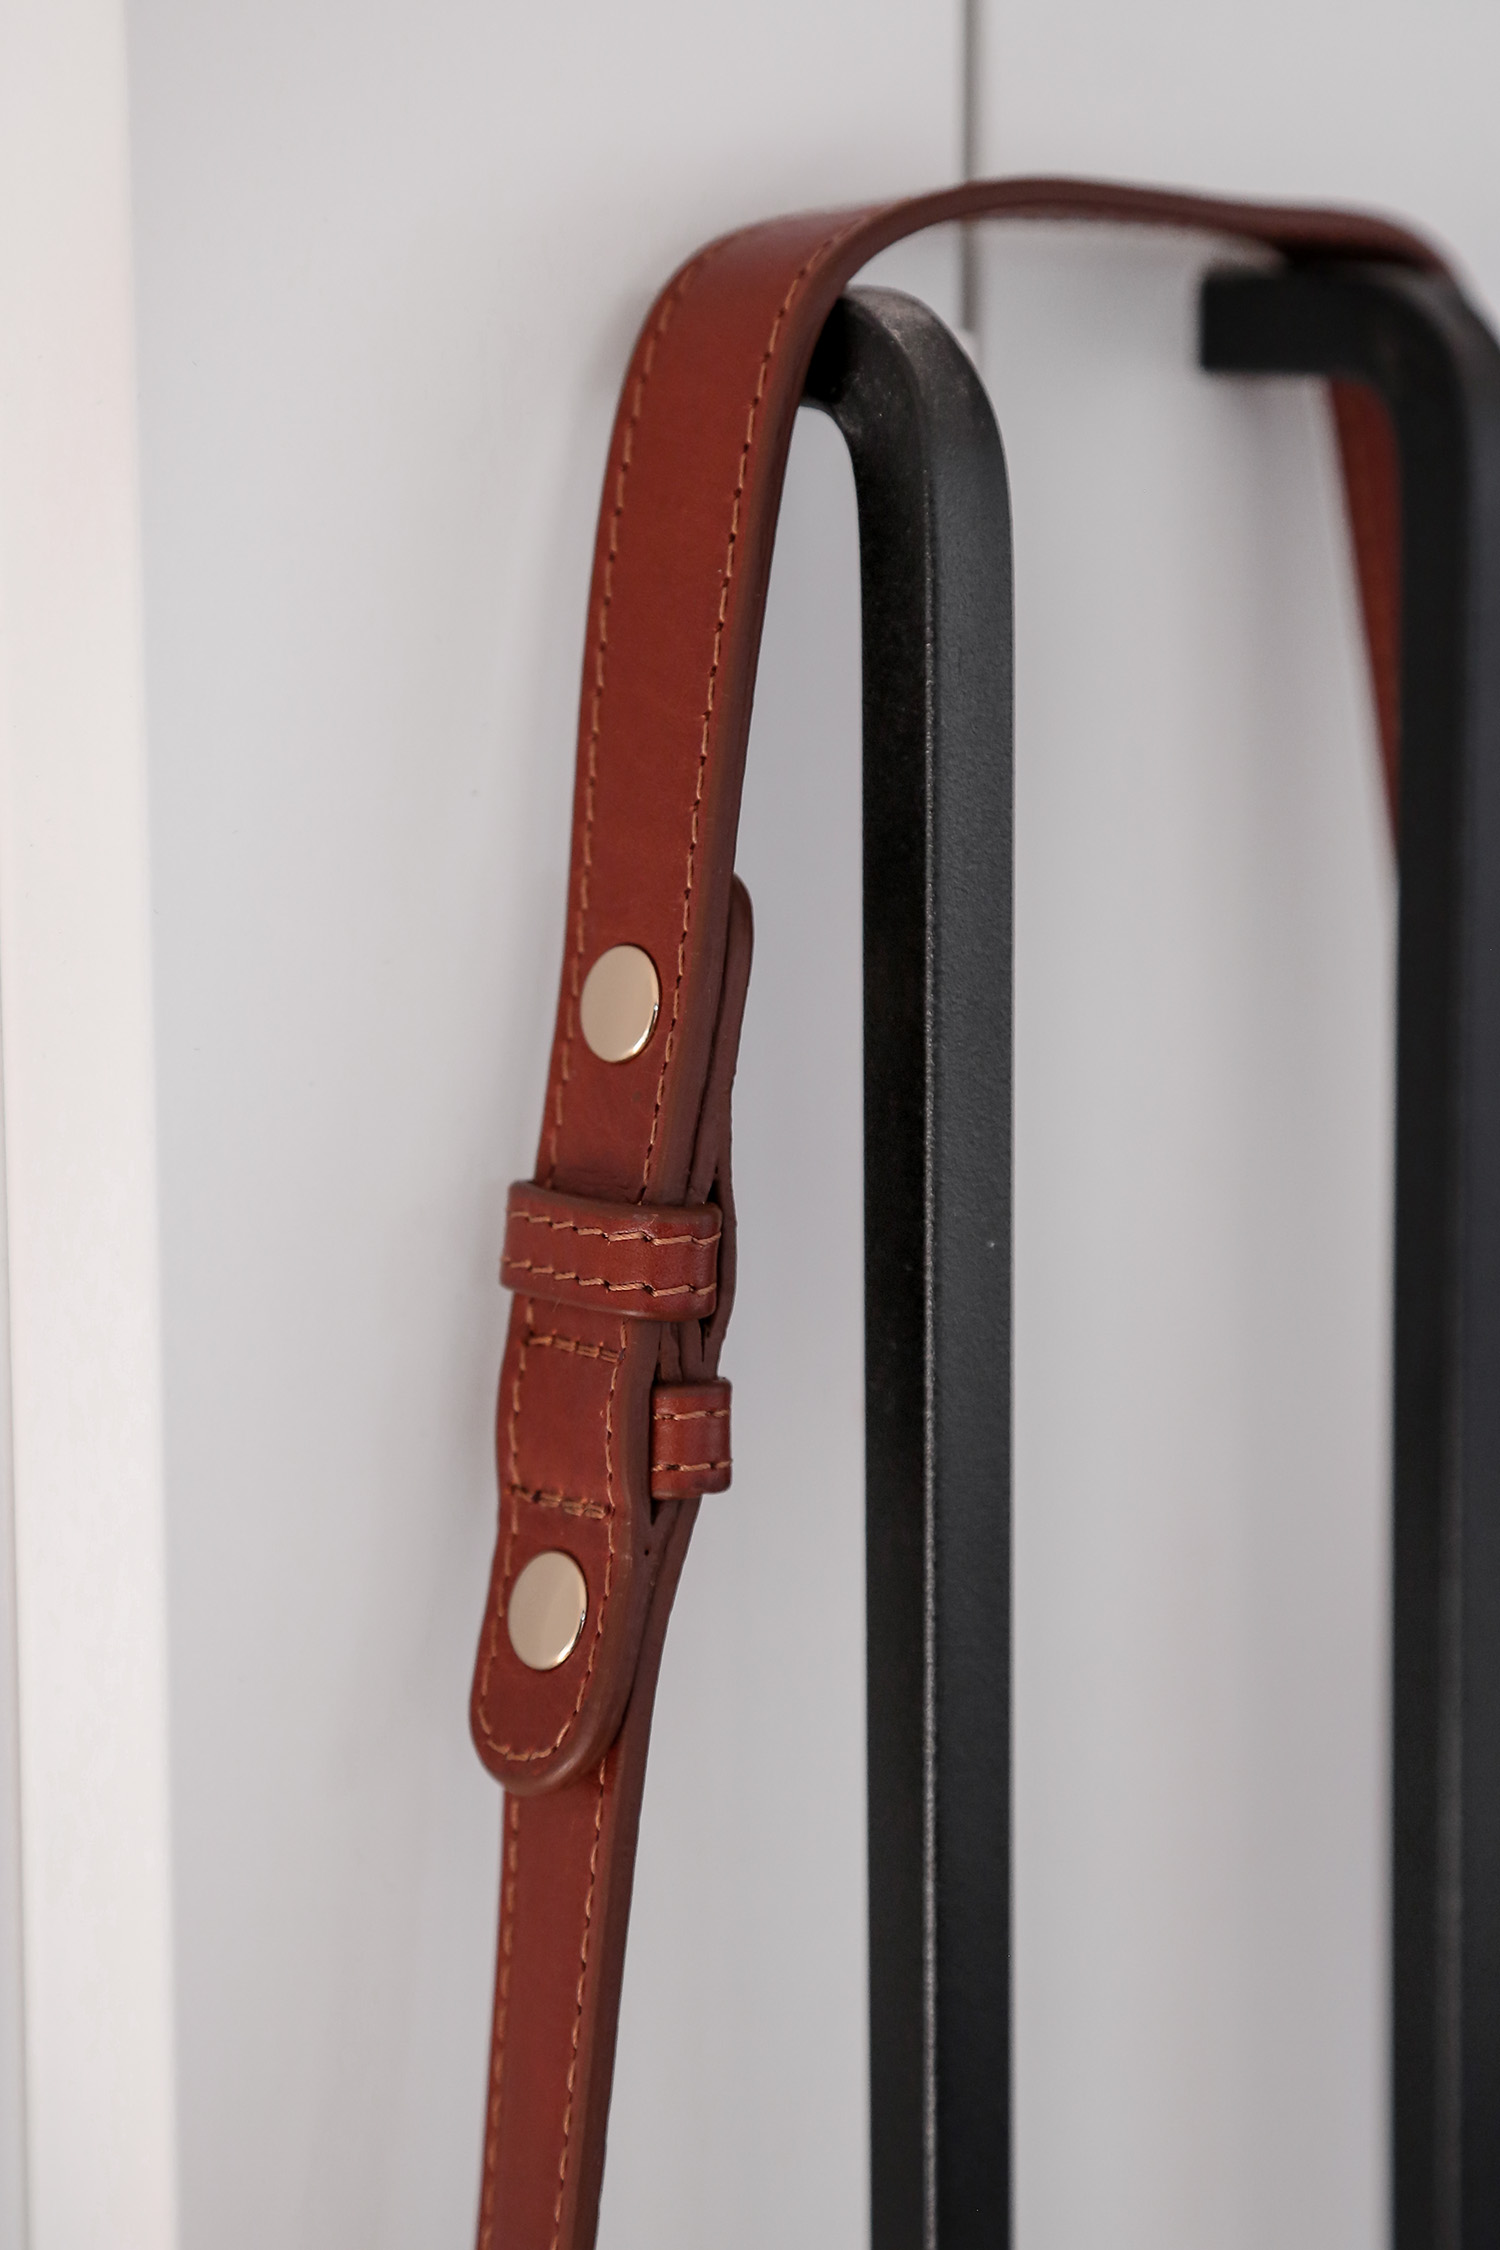 Adjustable handbag shoulder strap